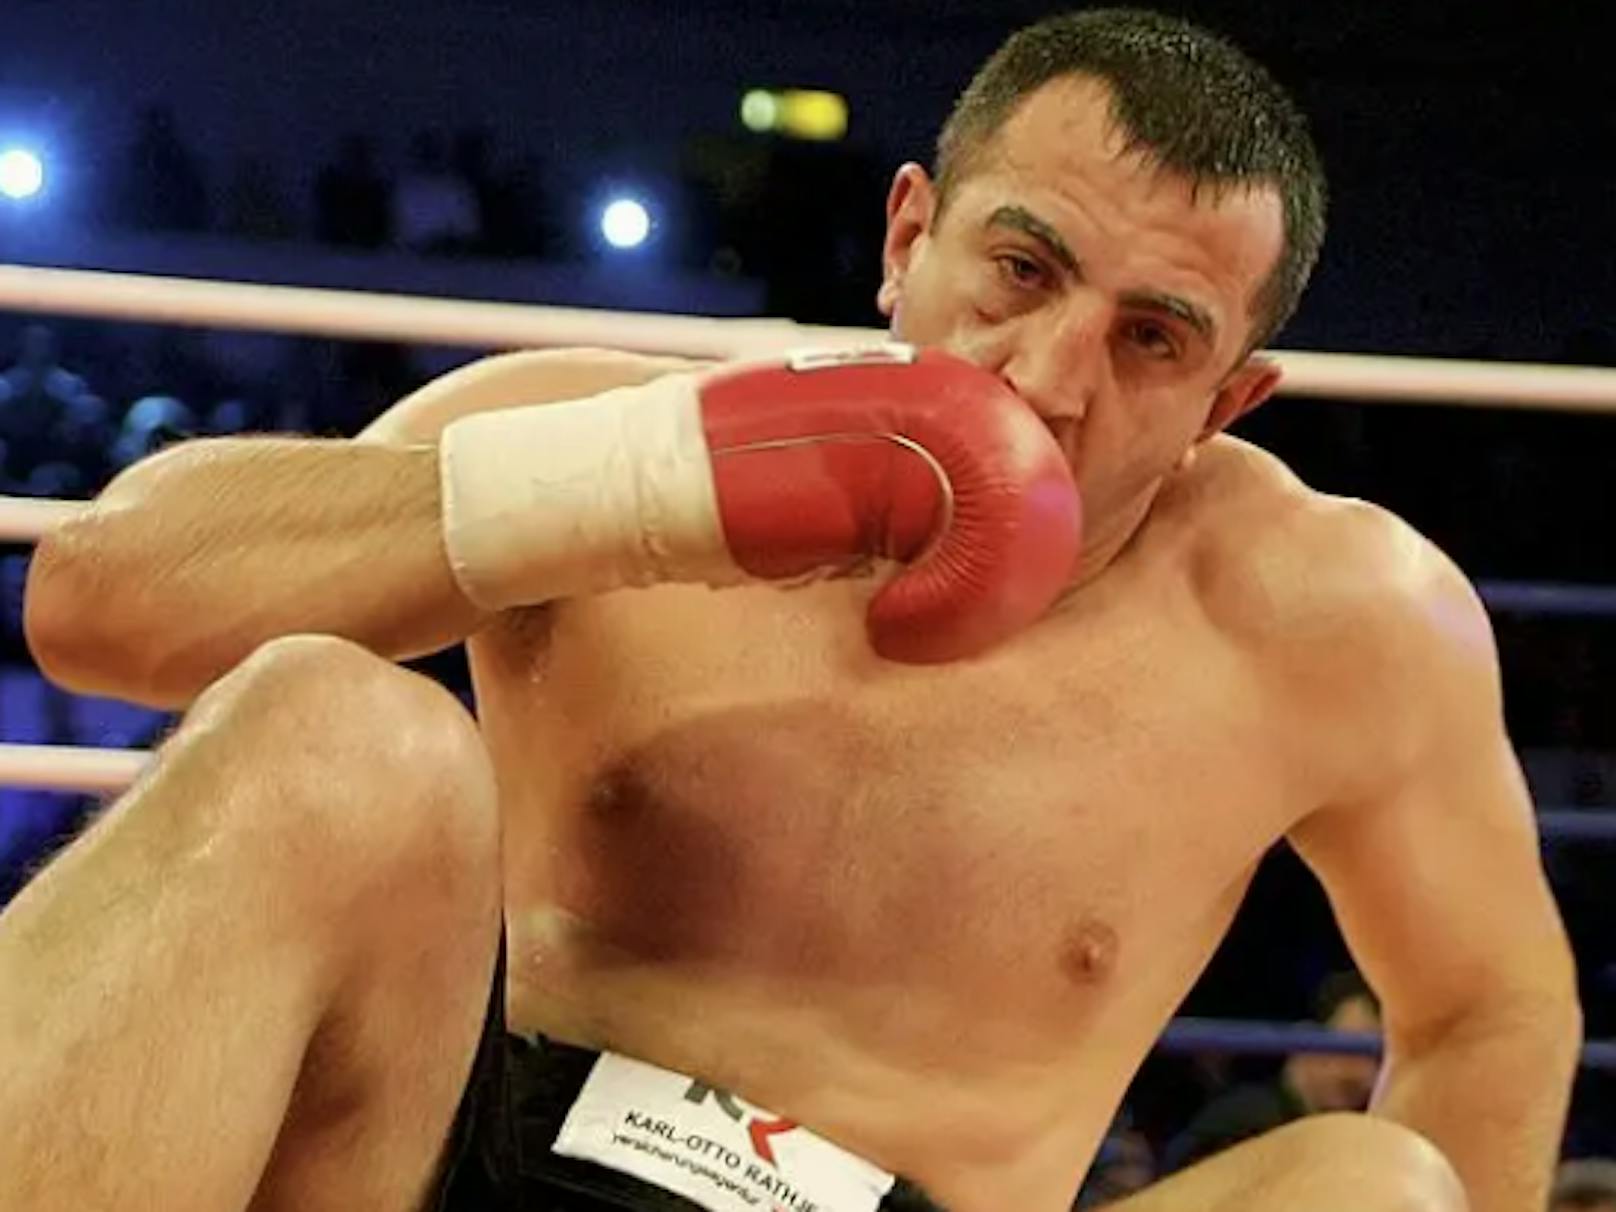 Der ehemalige Schwergewichts-Profi-Boxer könnte lebenslang in Haft landen.